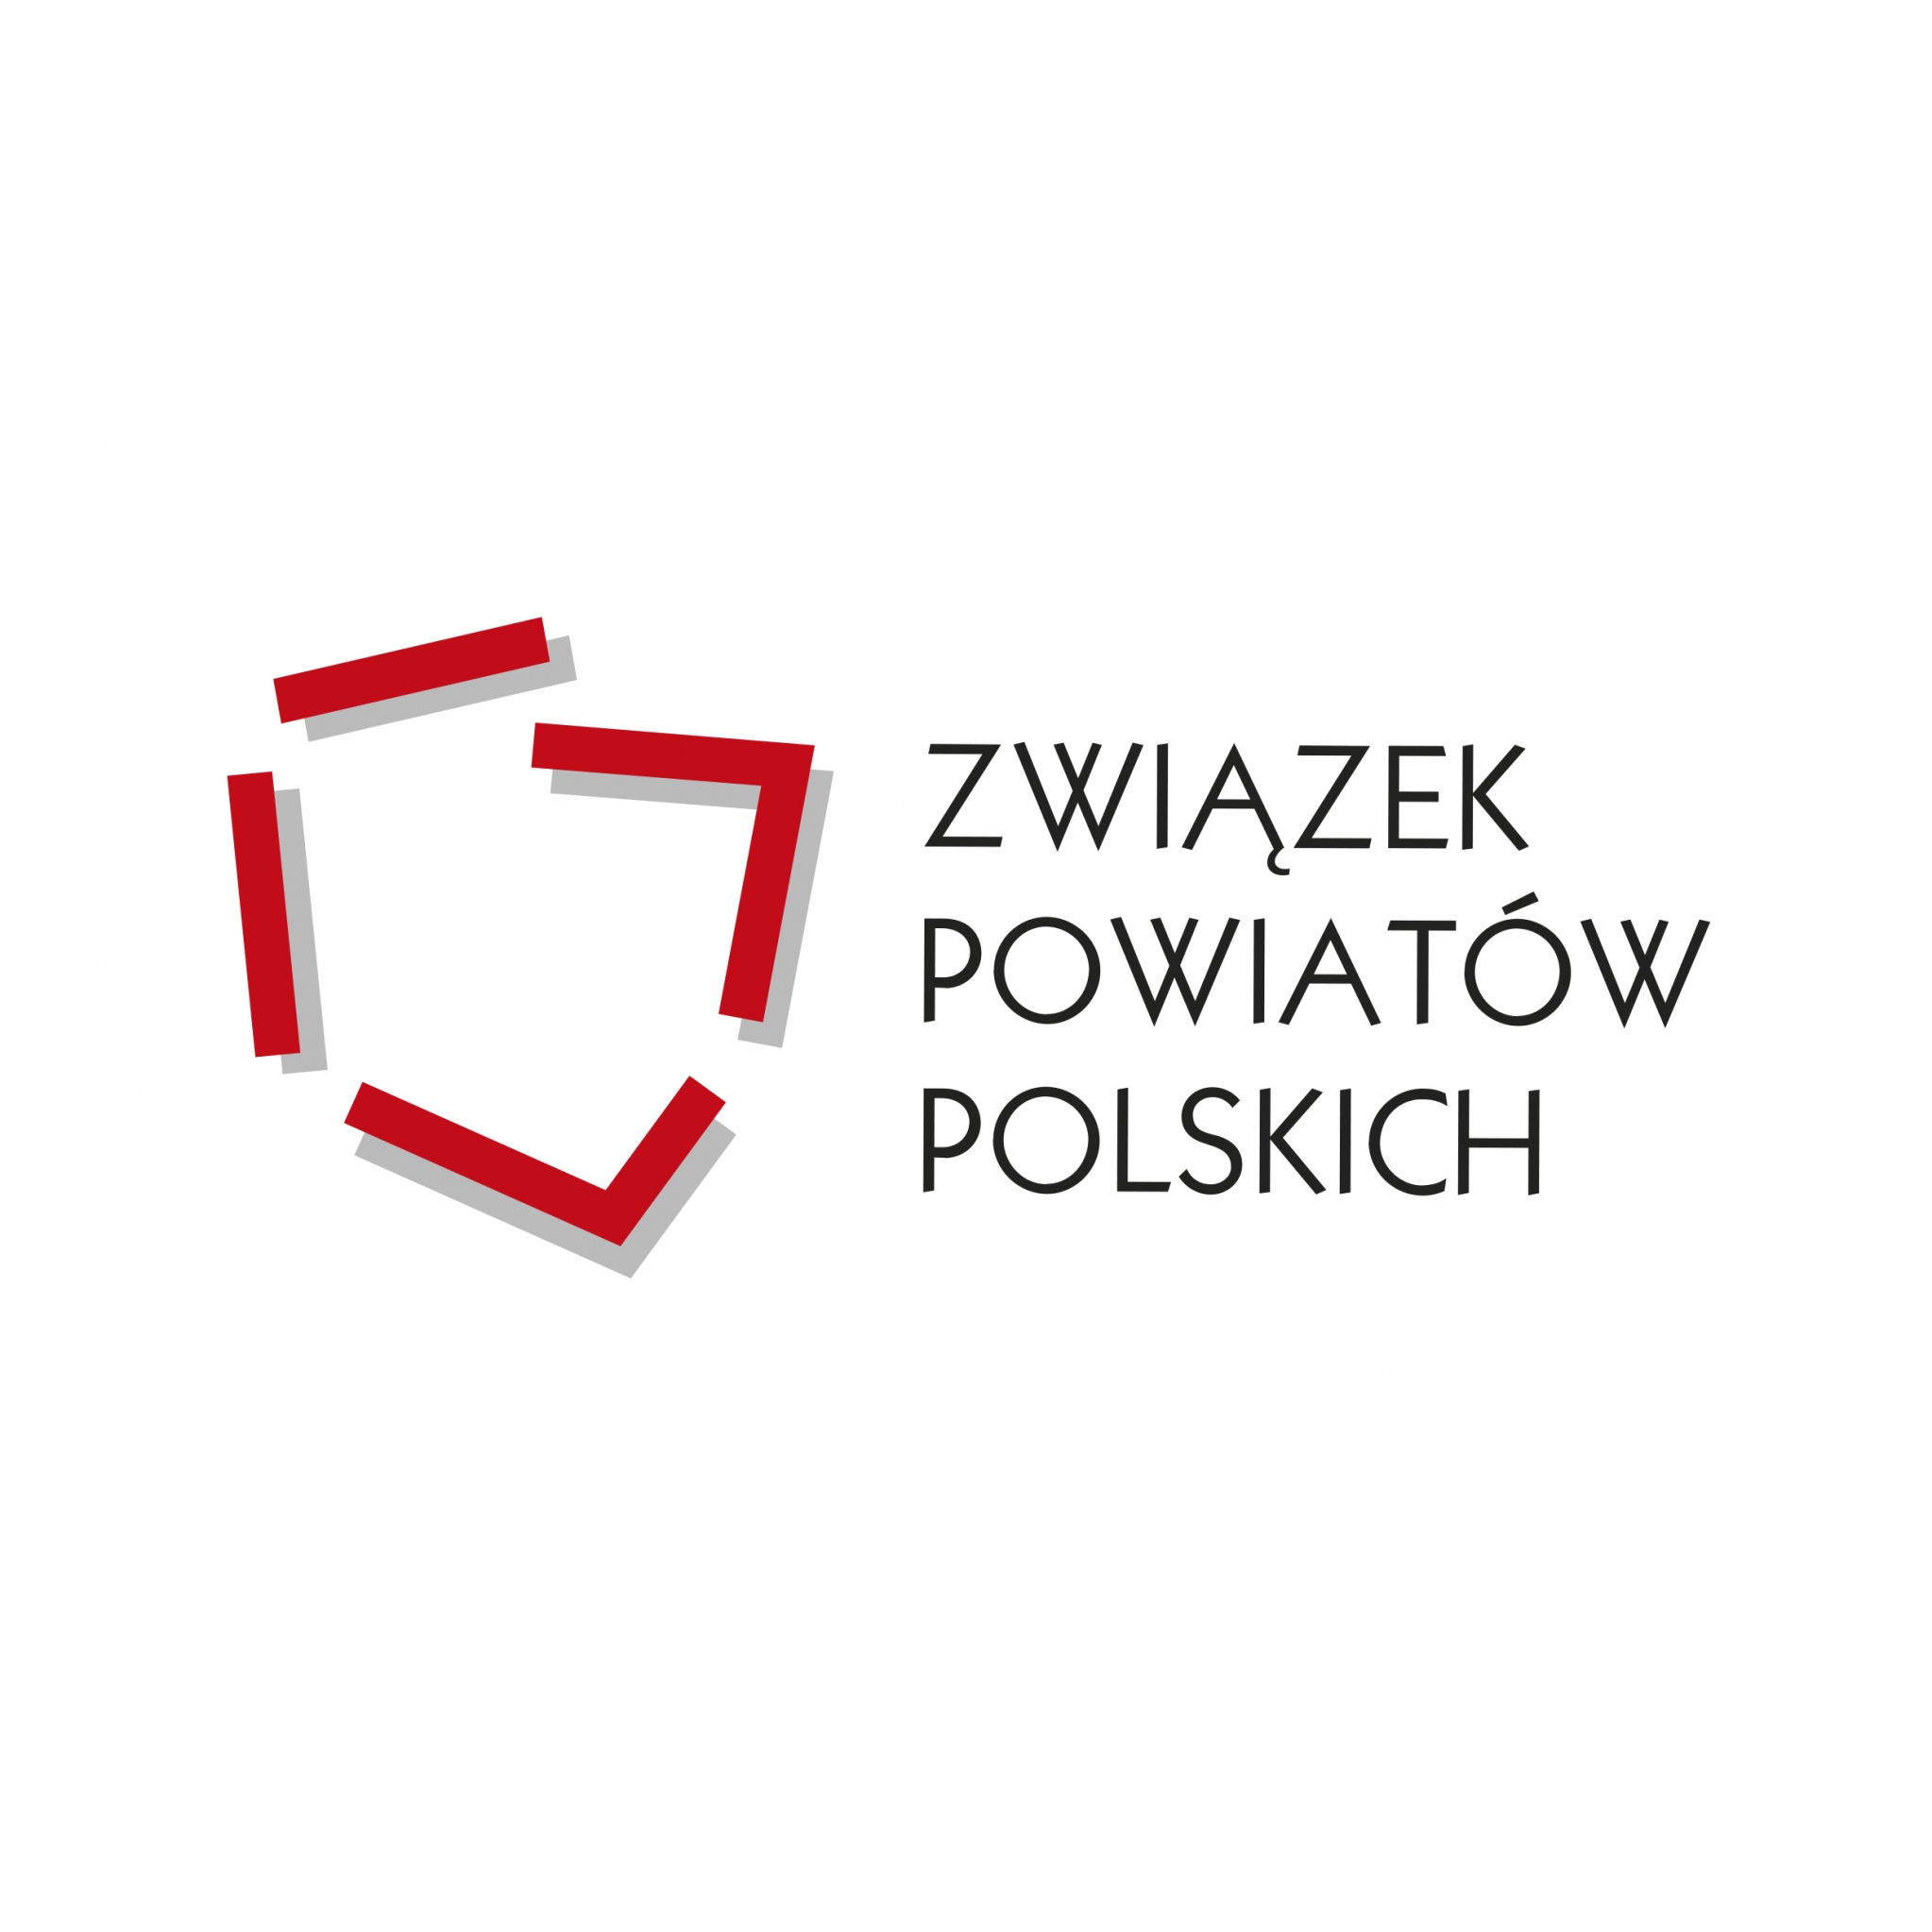 Starosta Rzeszowski wyróżniony za działania na rzecz rozwoju społeczno-gospodarczego Powiatu